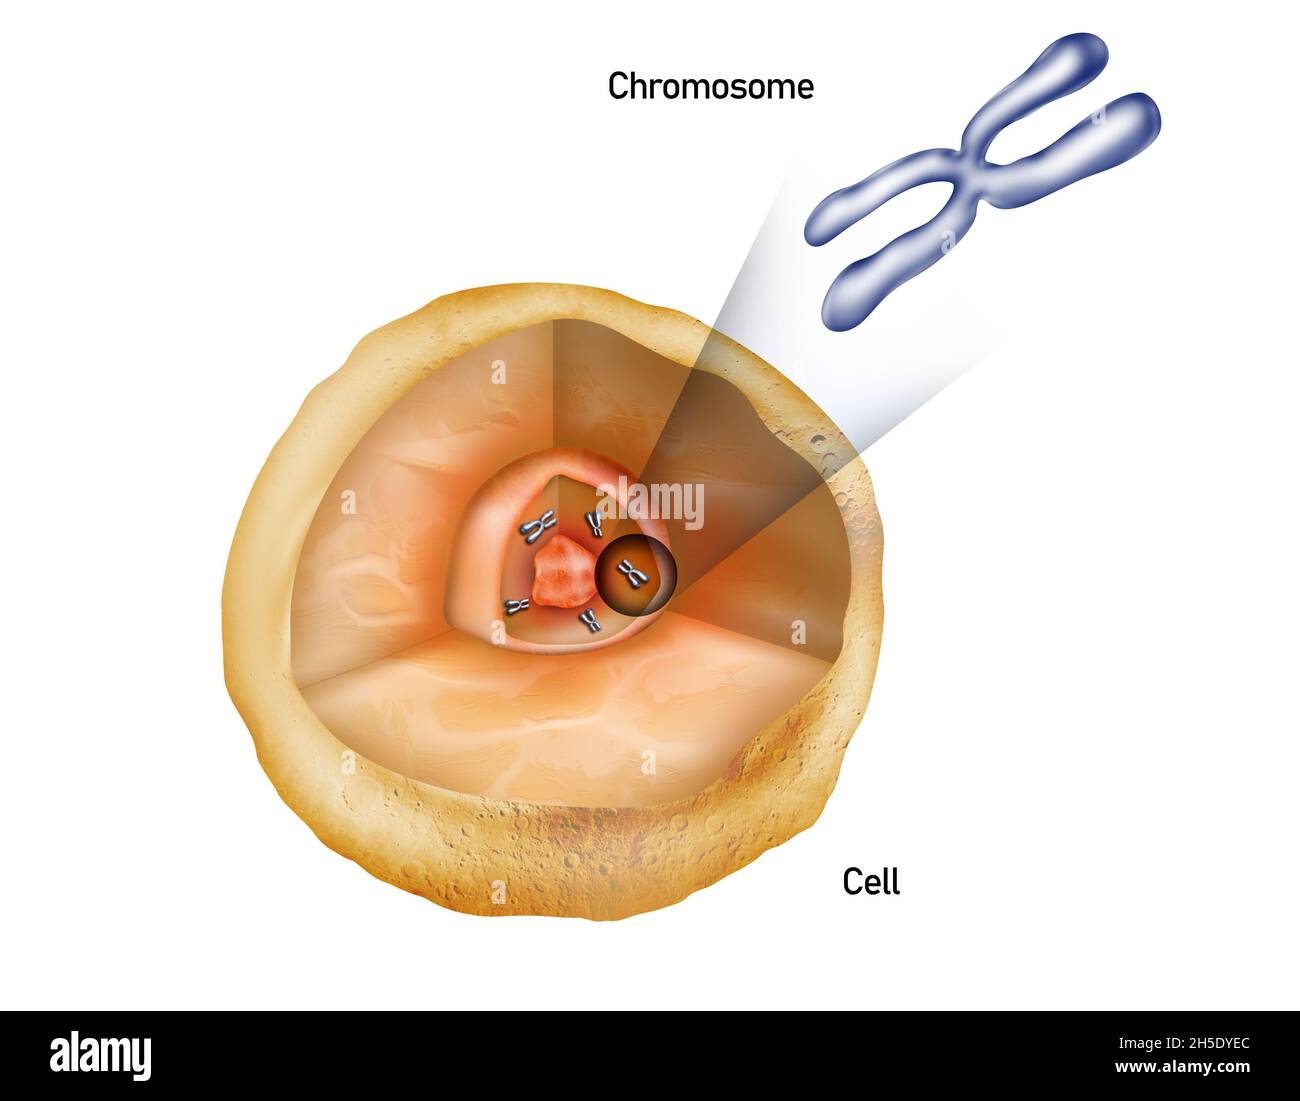 Chromosomes dans le noyau d'une cellule, structure cellulaire avec illustration chromosomique Banque D'Images